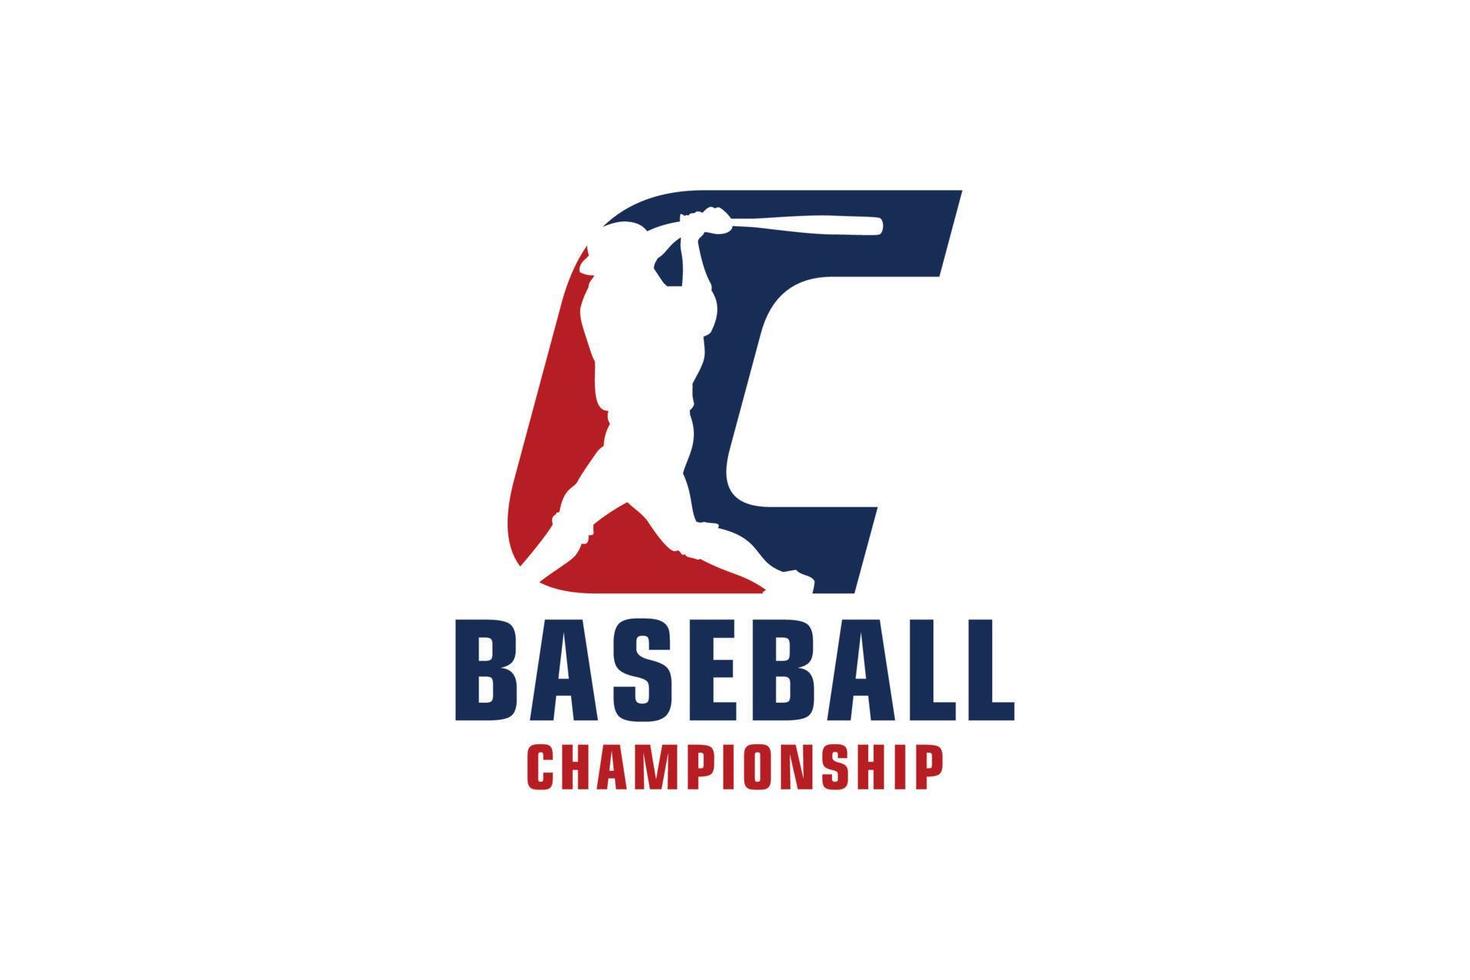 letra c com design de logotipo de beisebol. elementos de modelo de design vetorial para equipe esportiva ou identidade corporativa. vetor